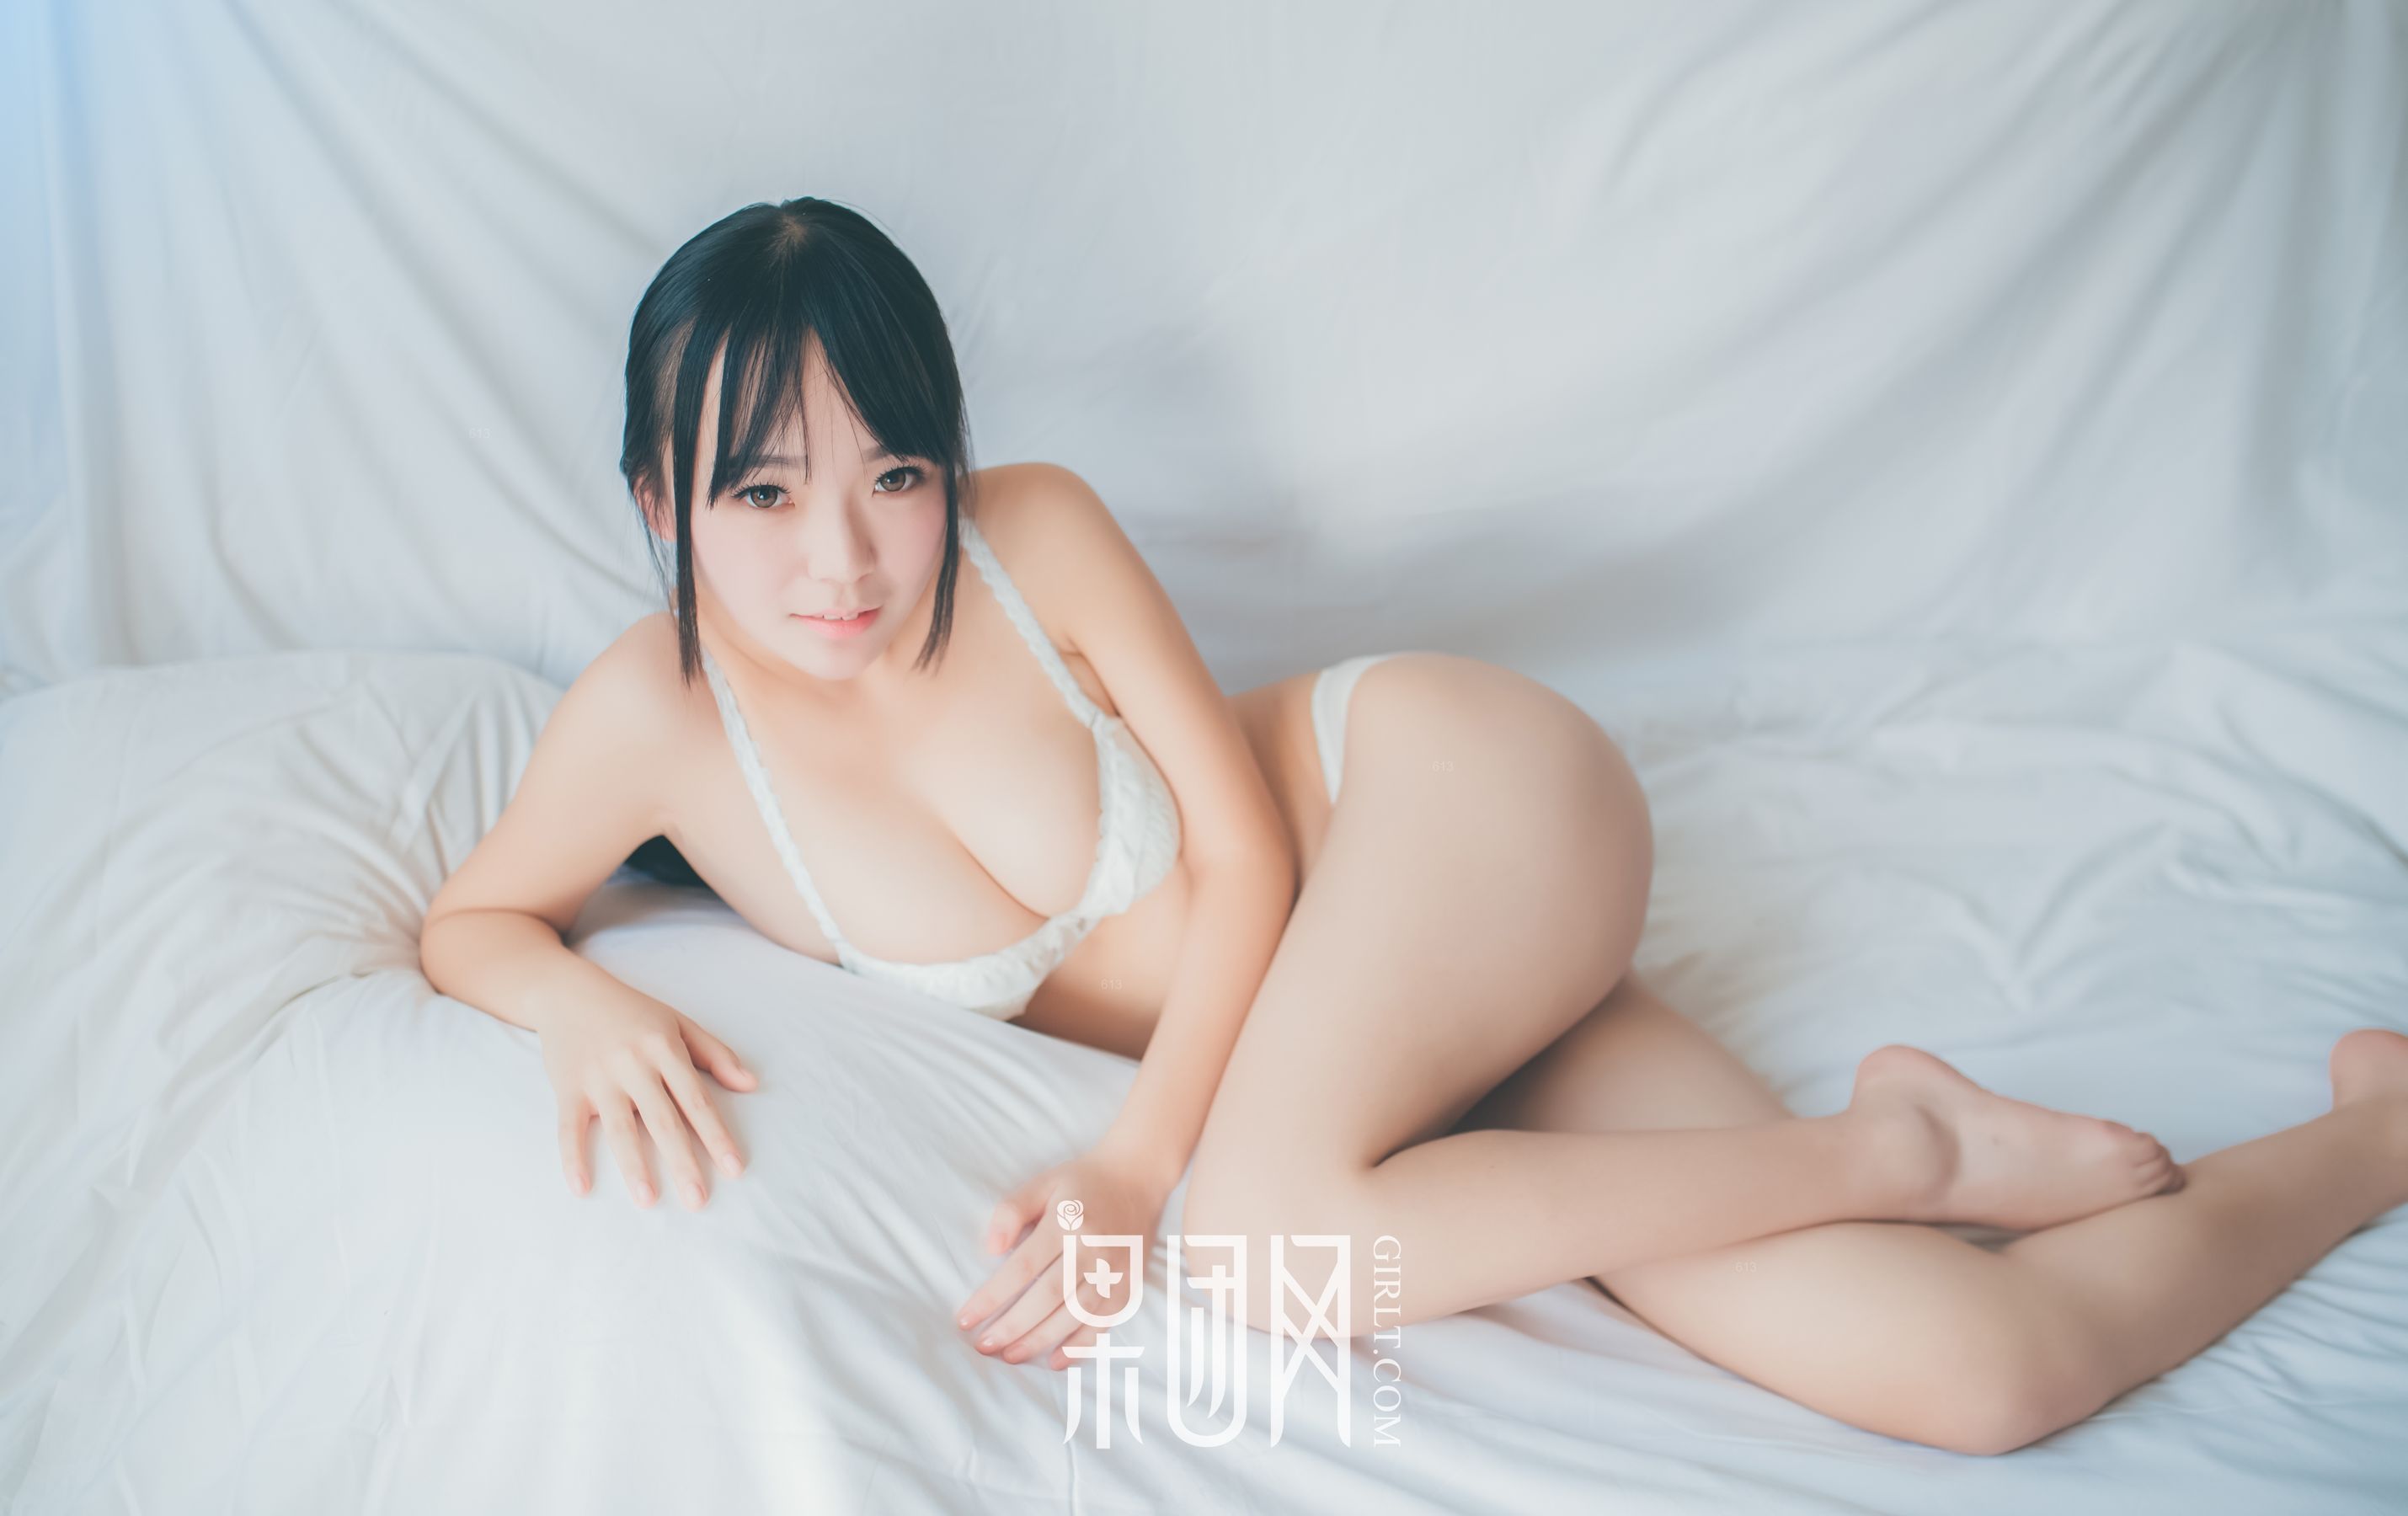 [Beautyleg] No.1448 Модель ноги Miki / Wu Meixi Красивые ноги Страница 3 No.9607fc